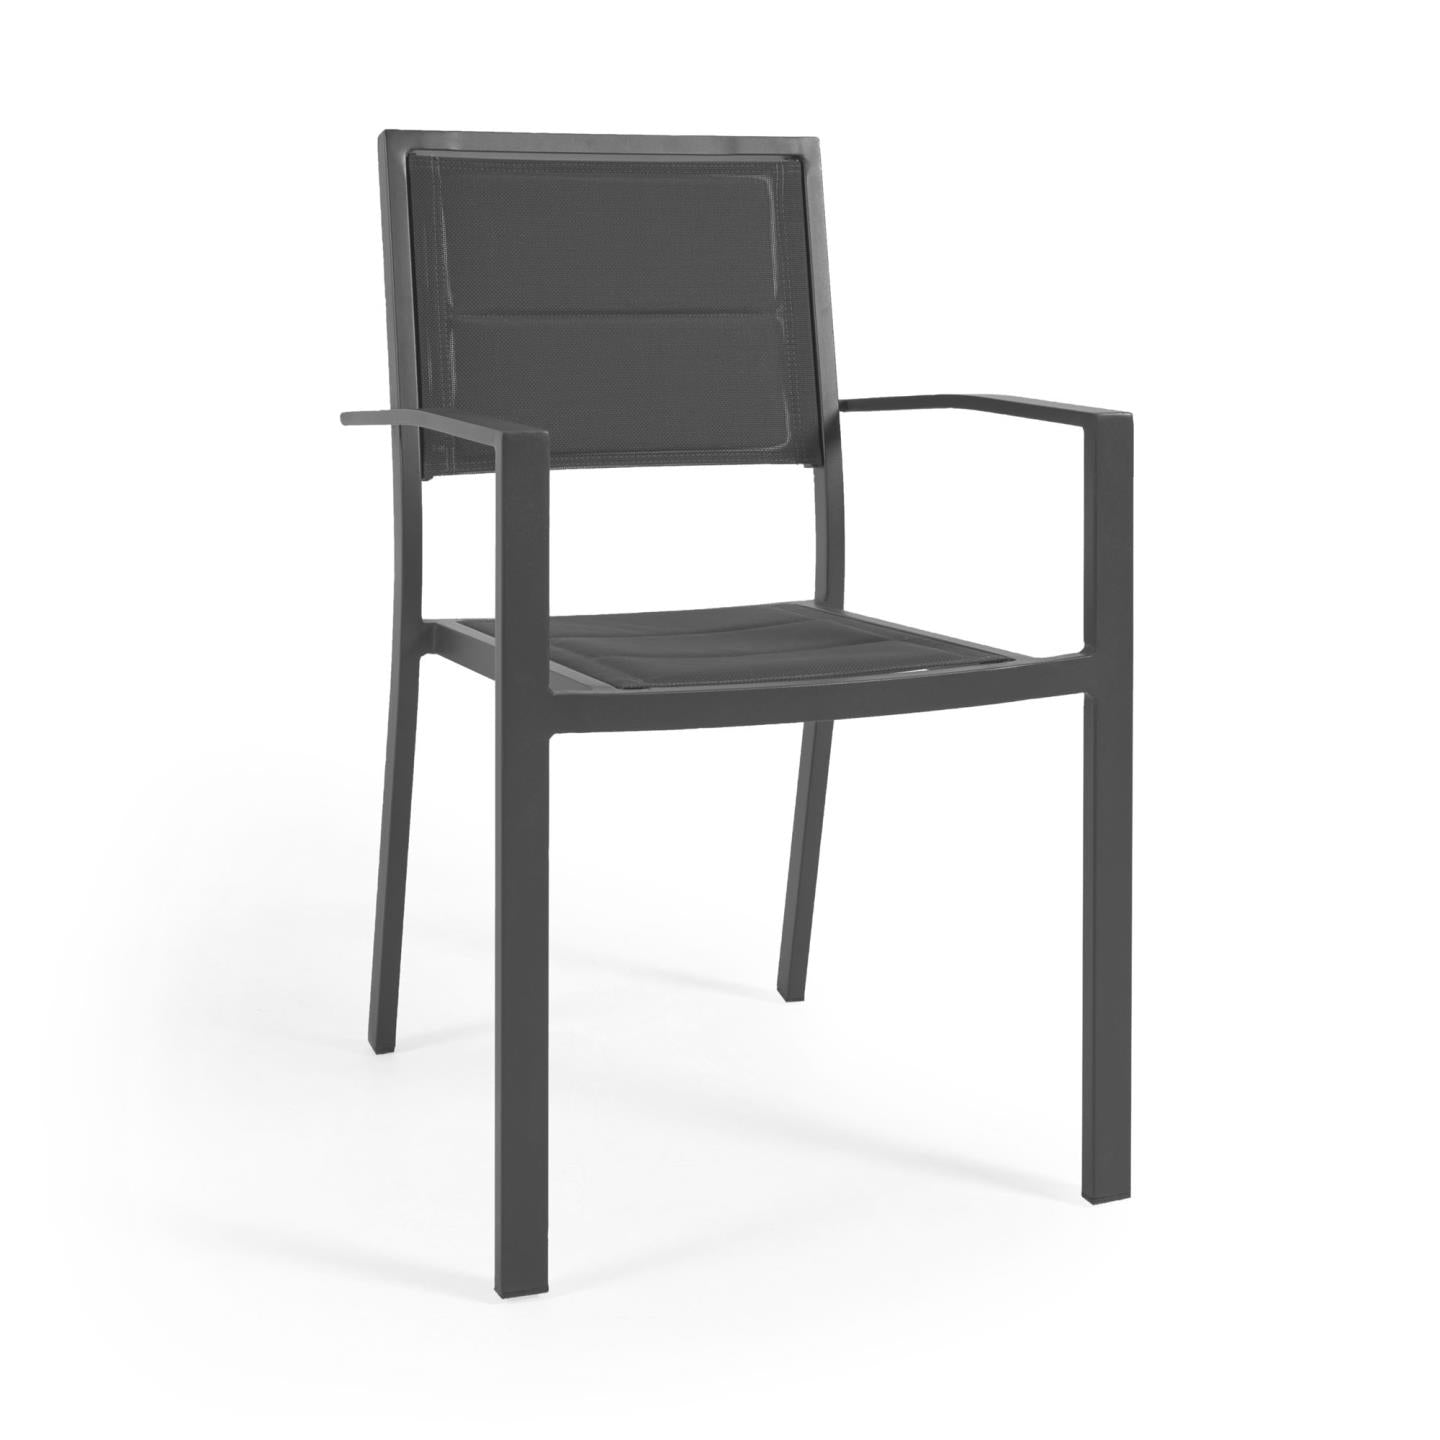 Sirley egymásba rakható kültéri szék fekete alumíniumból és textilénből